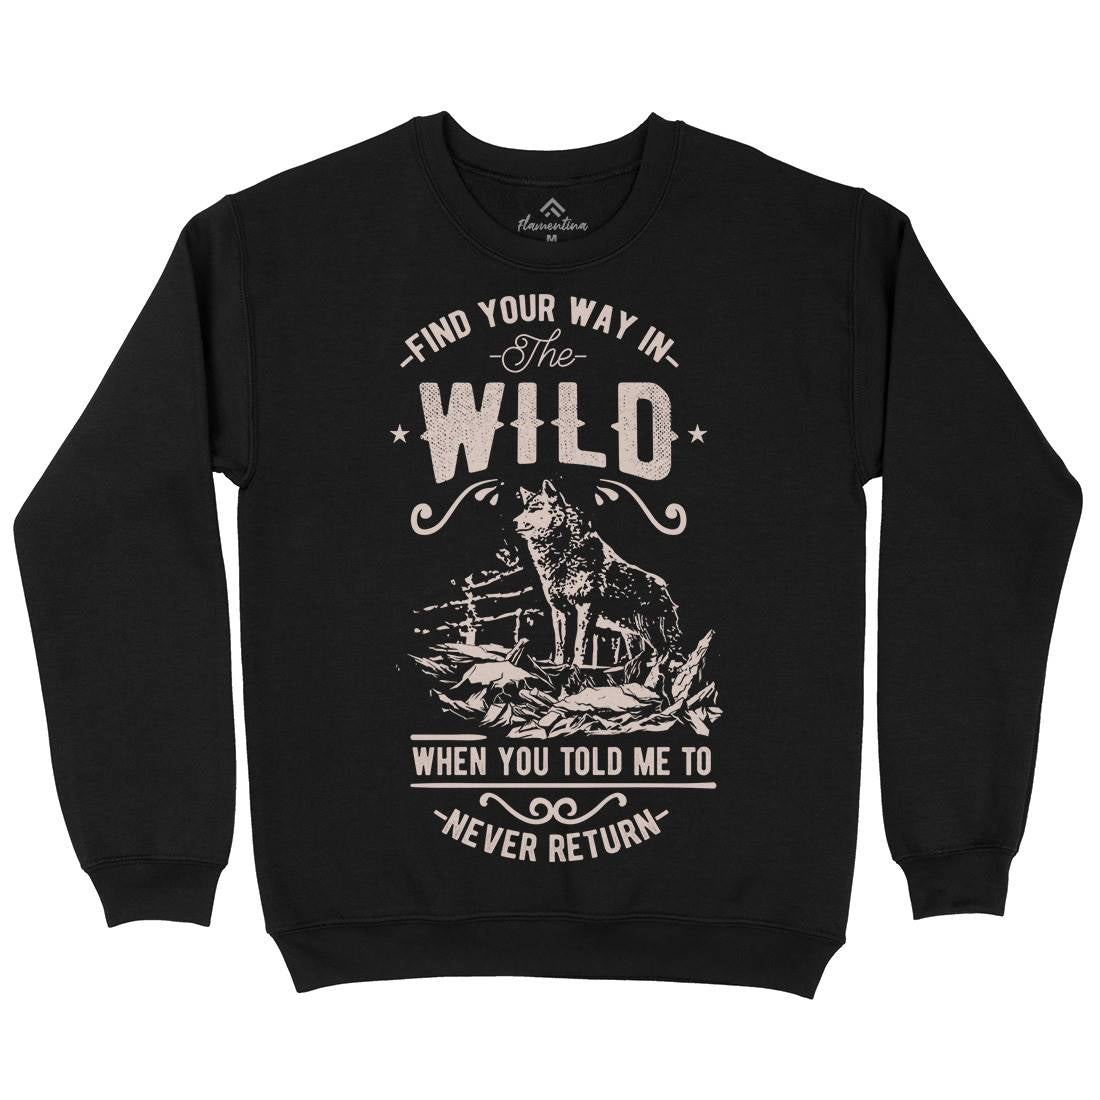 Find Your Way In The Wild Kids Crew Neck Sweatshirt Nature C932